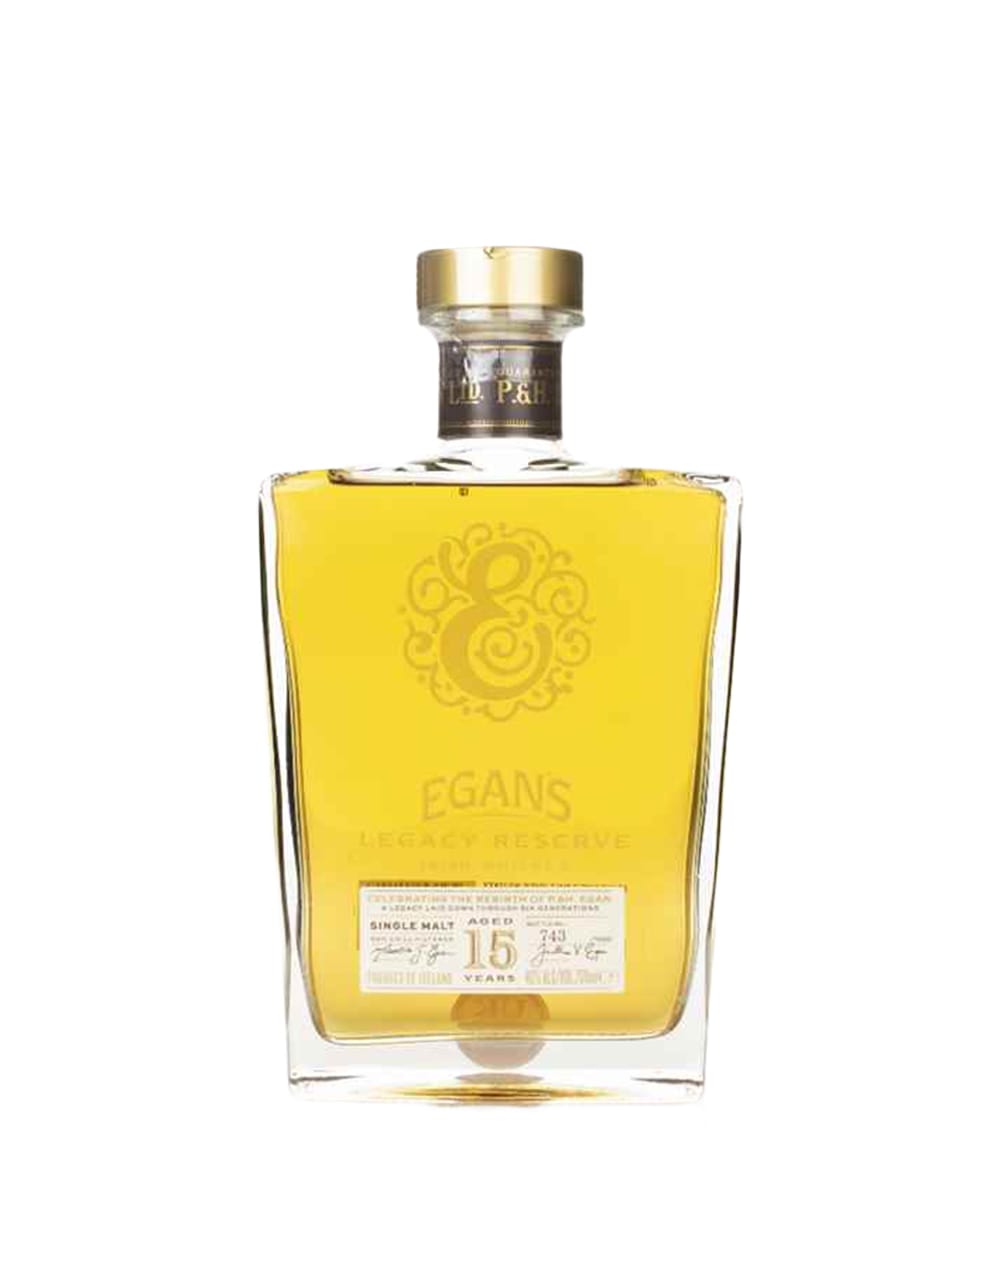 Egan's Legacy Reserve Irish Whiskey